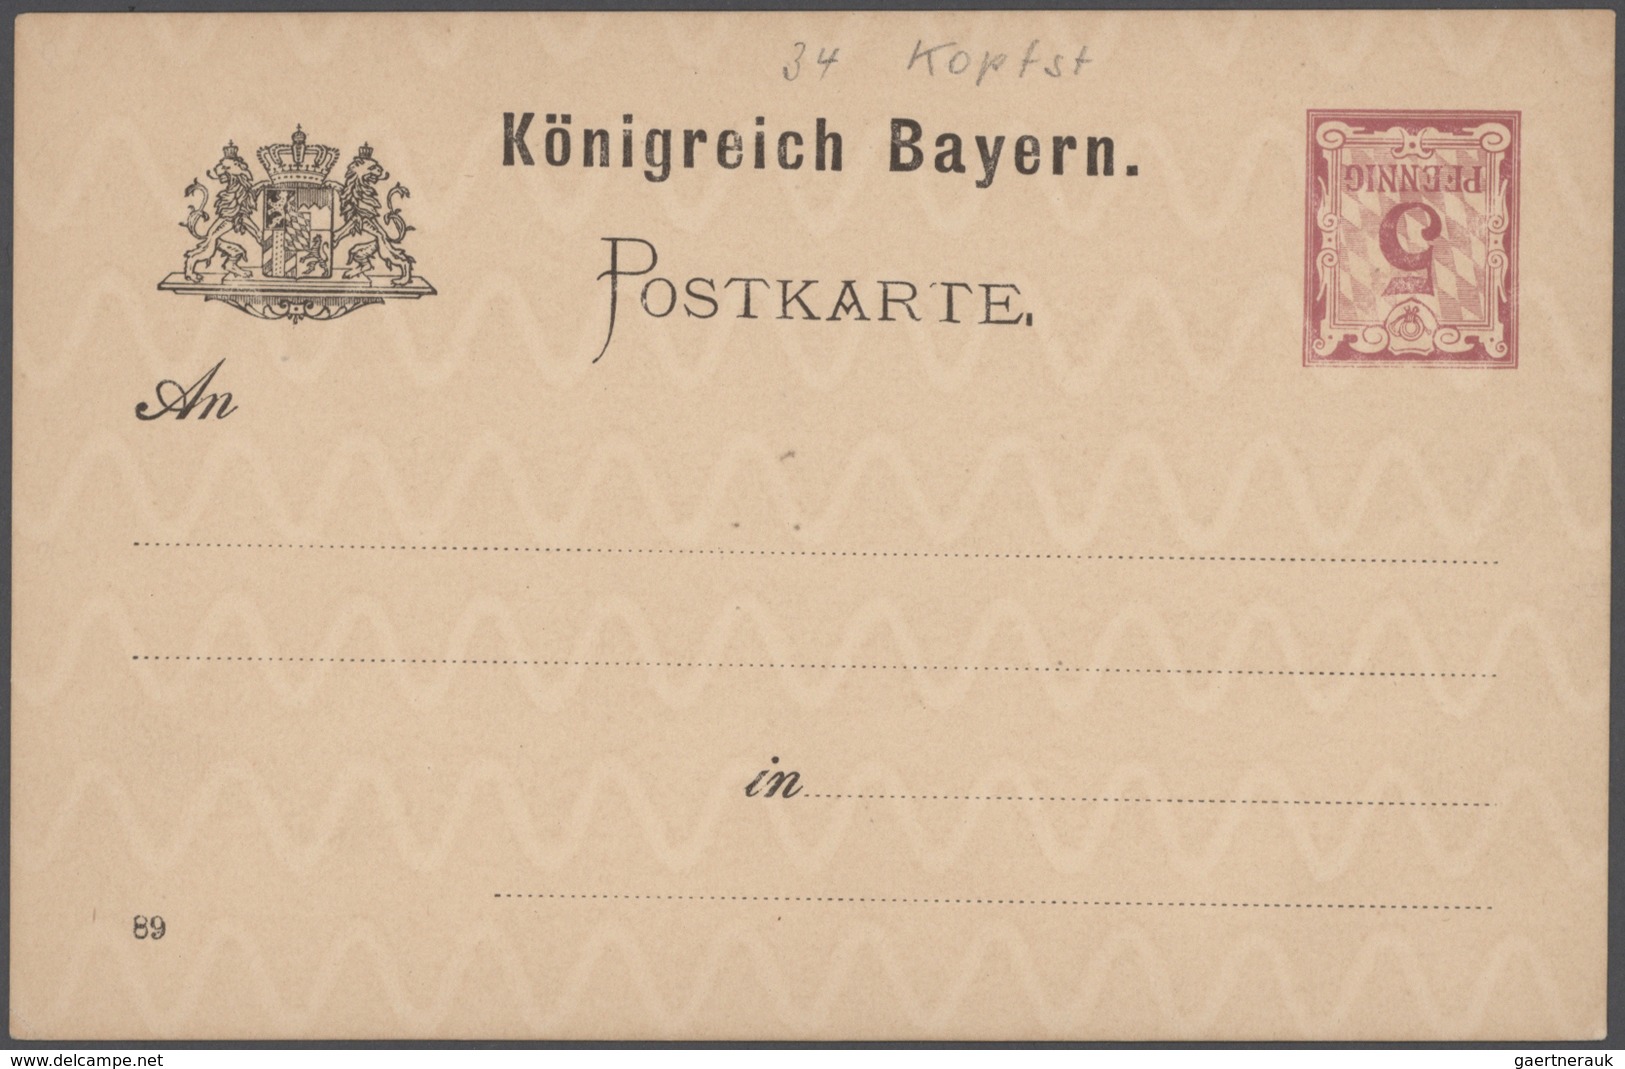 Bayern - Marken und Briefe: 1850-1919, Partie mit 70 Briefen, Karten und Ganzsachen, Hauptwert bei d